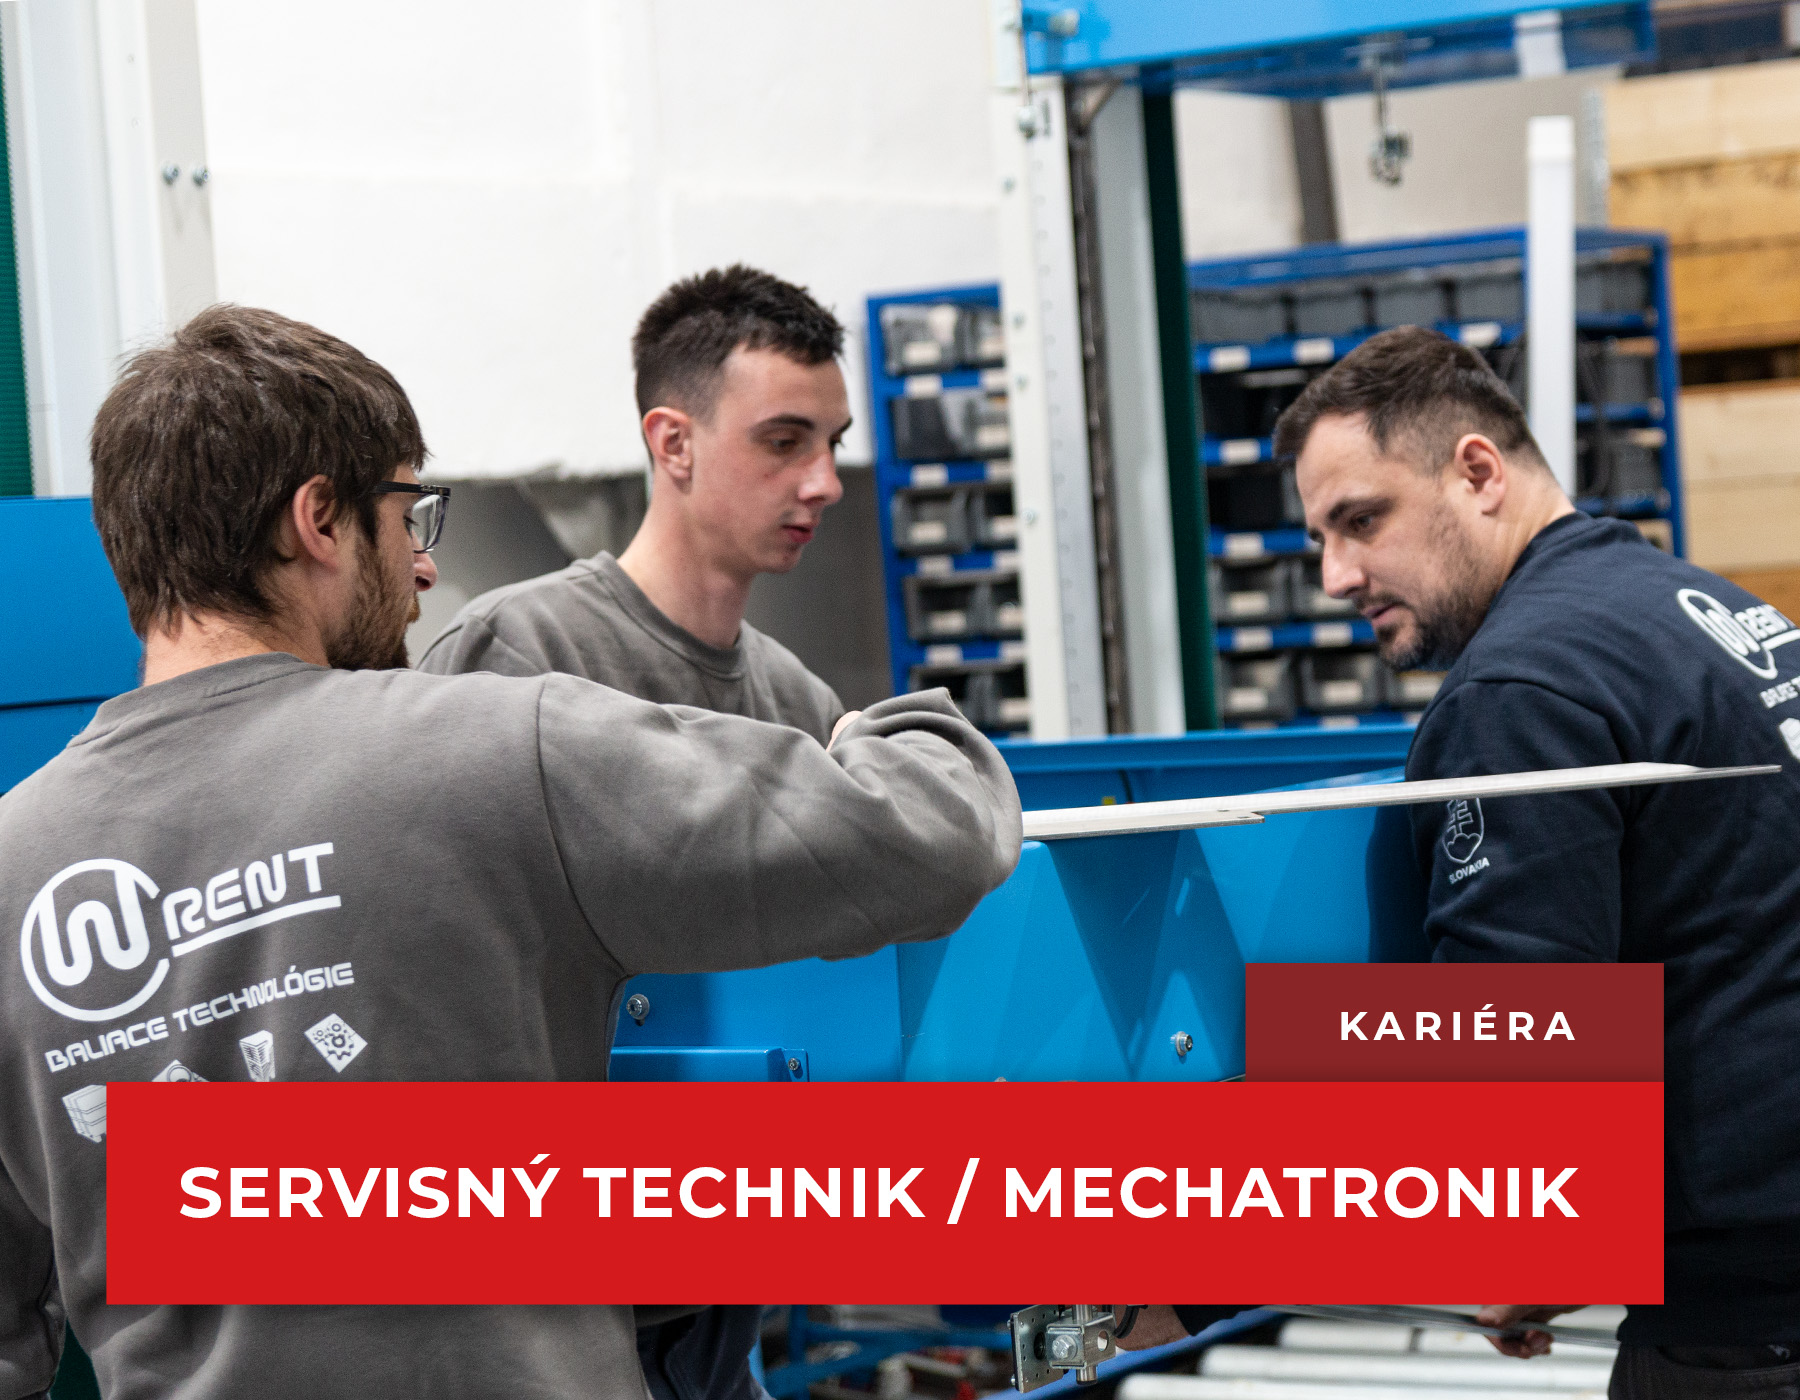 Kariéra - Servisný technik / Mechatronik